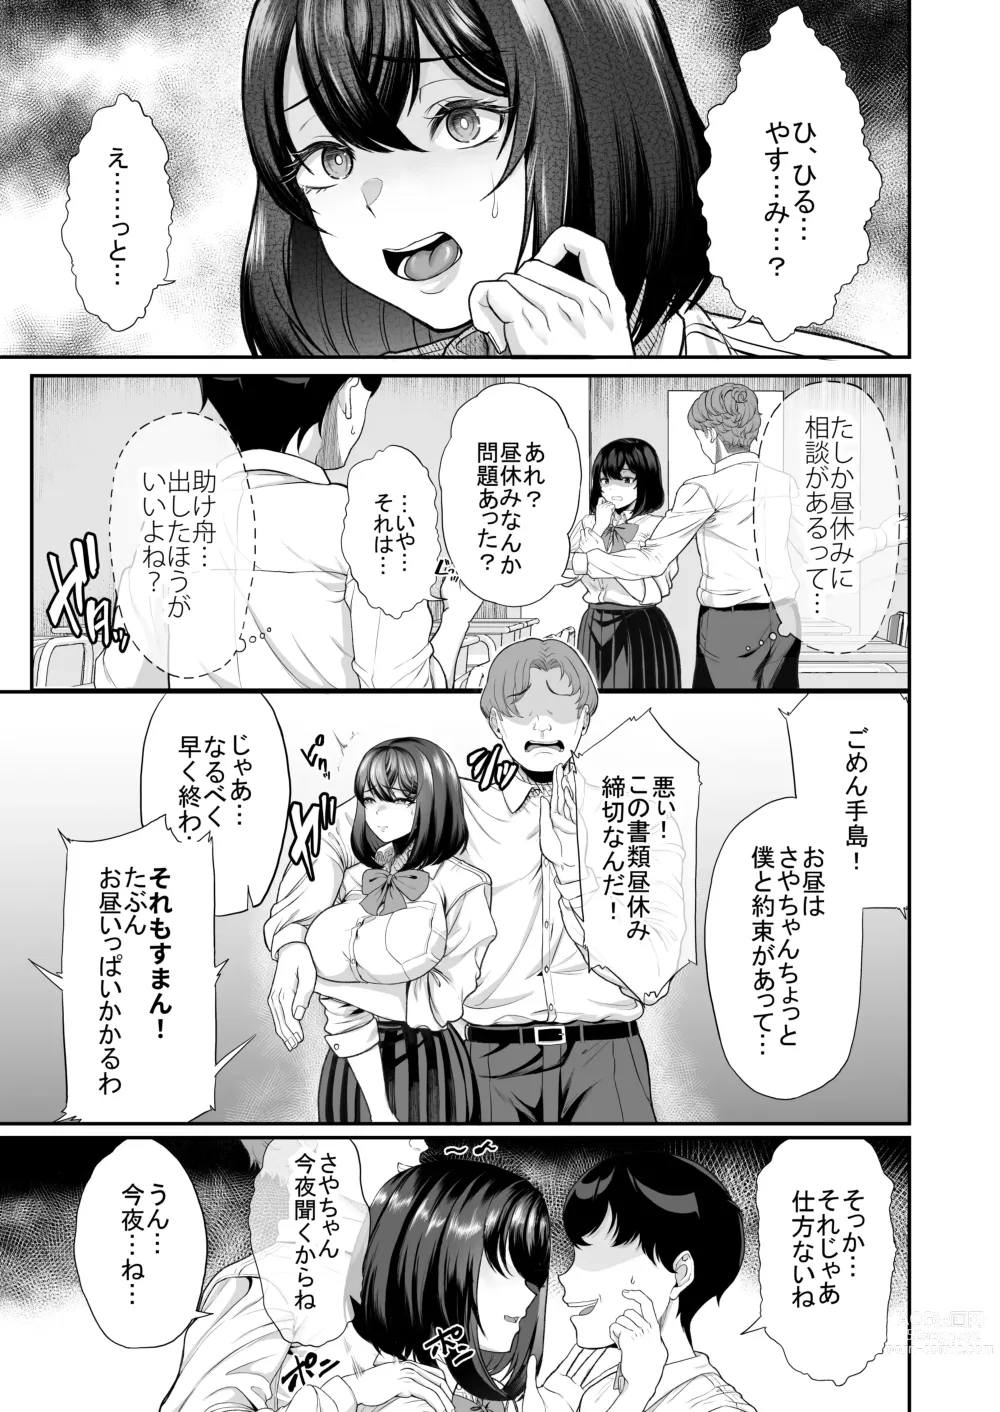 Page 14 of doujinshi Suieibuno kanojoga shinyuuwo kobamenakunaru katei